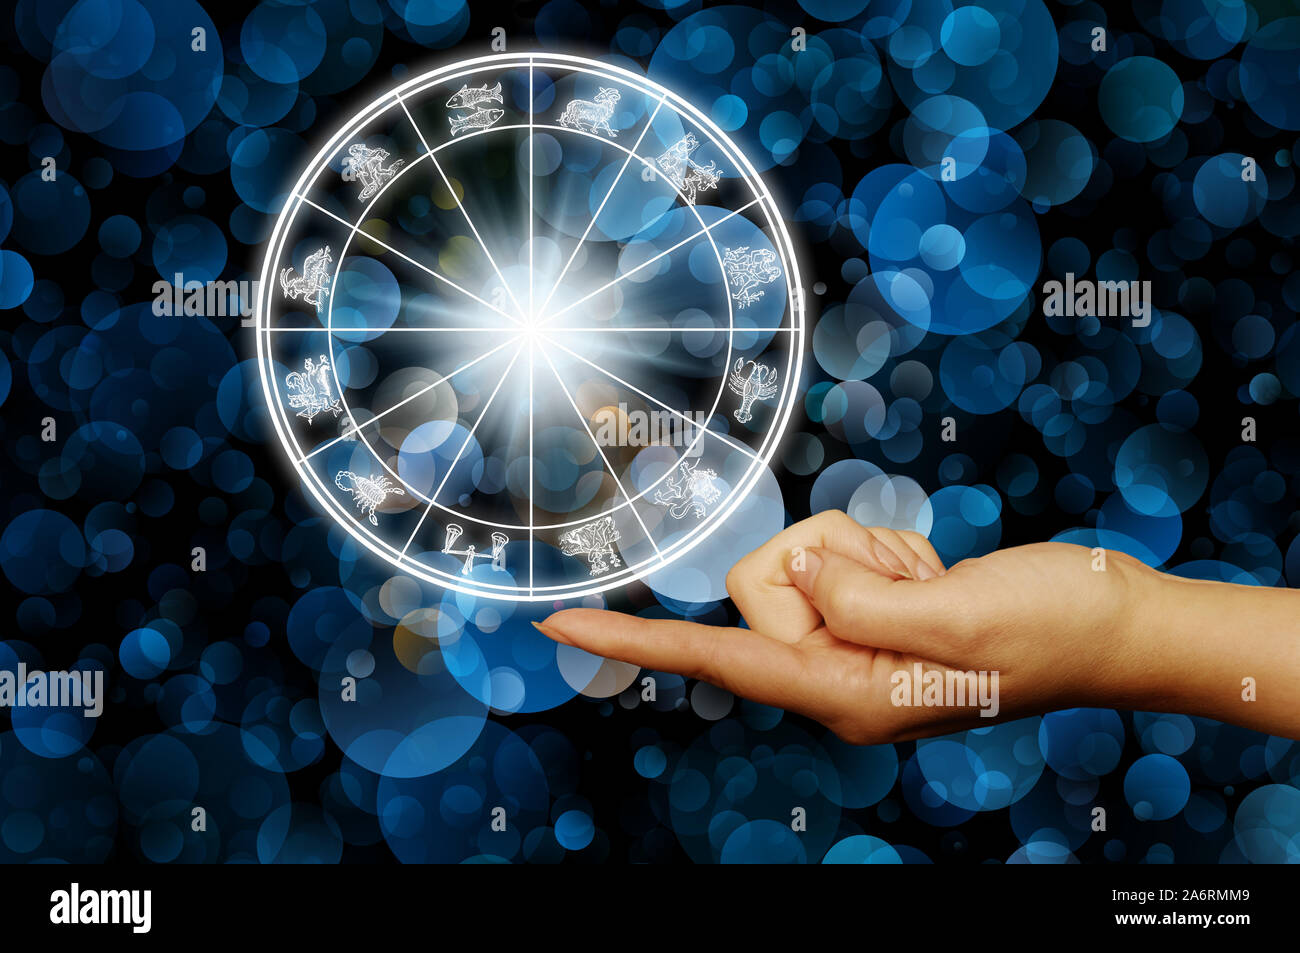 La tenue d'un doigt avec roue astrologie signes du zodiaque Banque D'Images